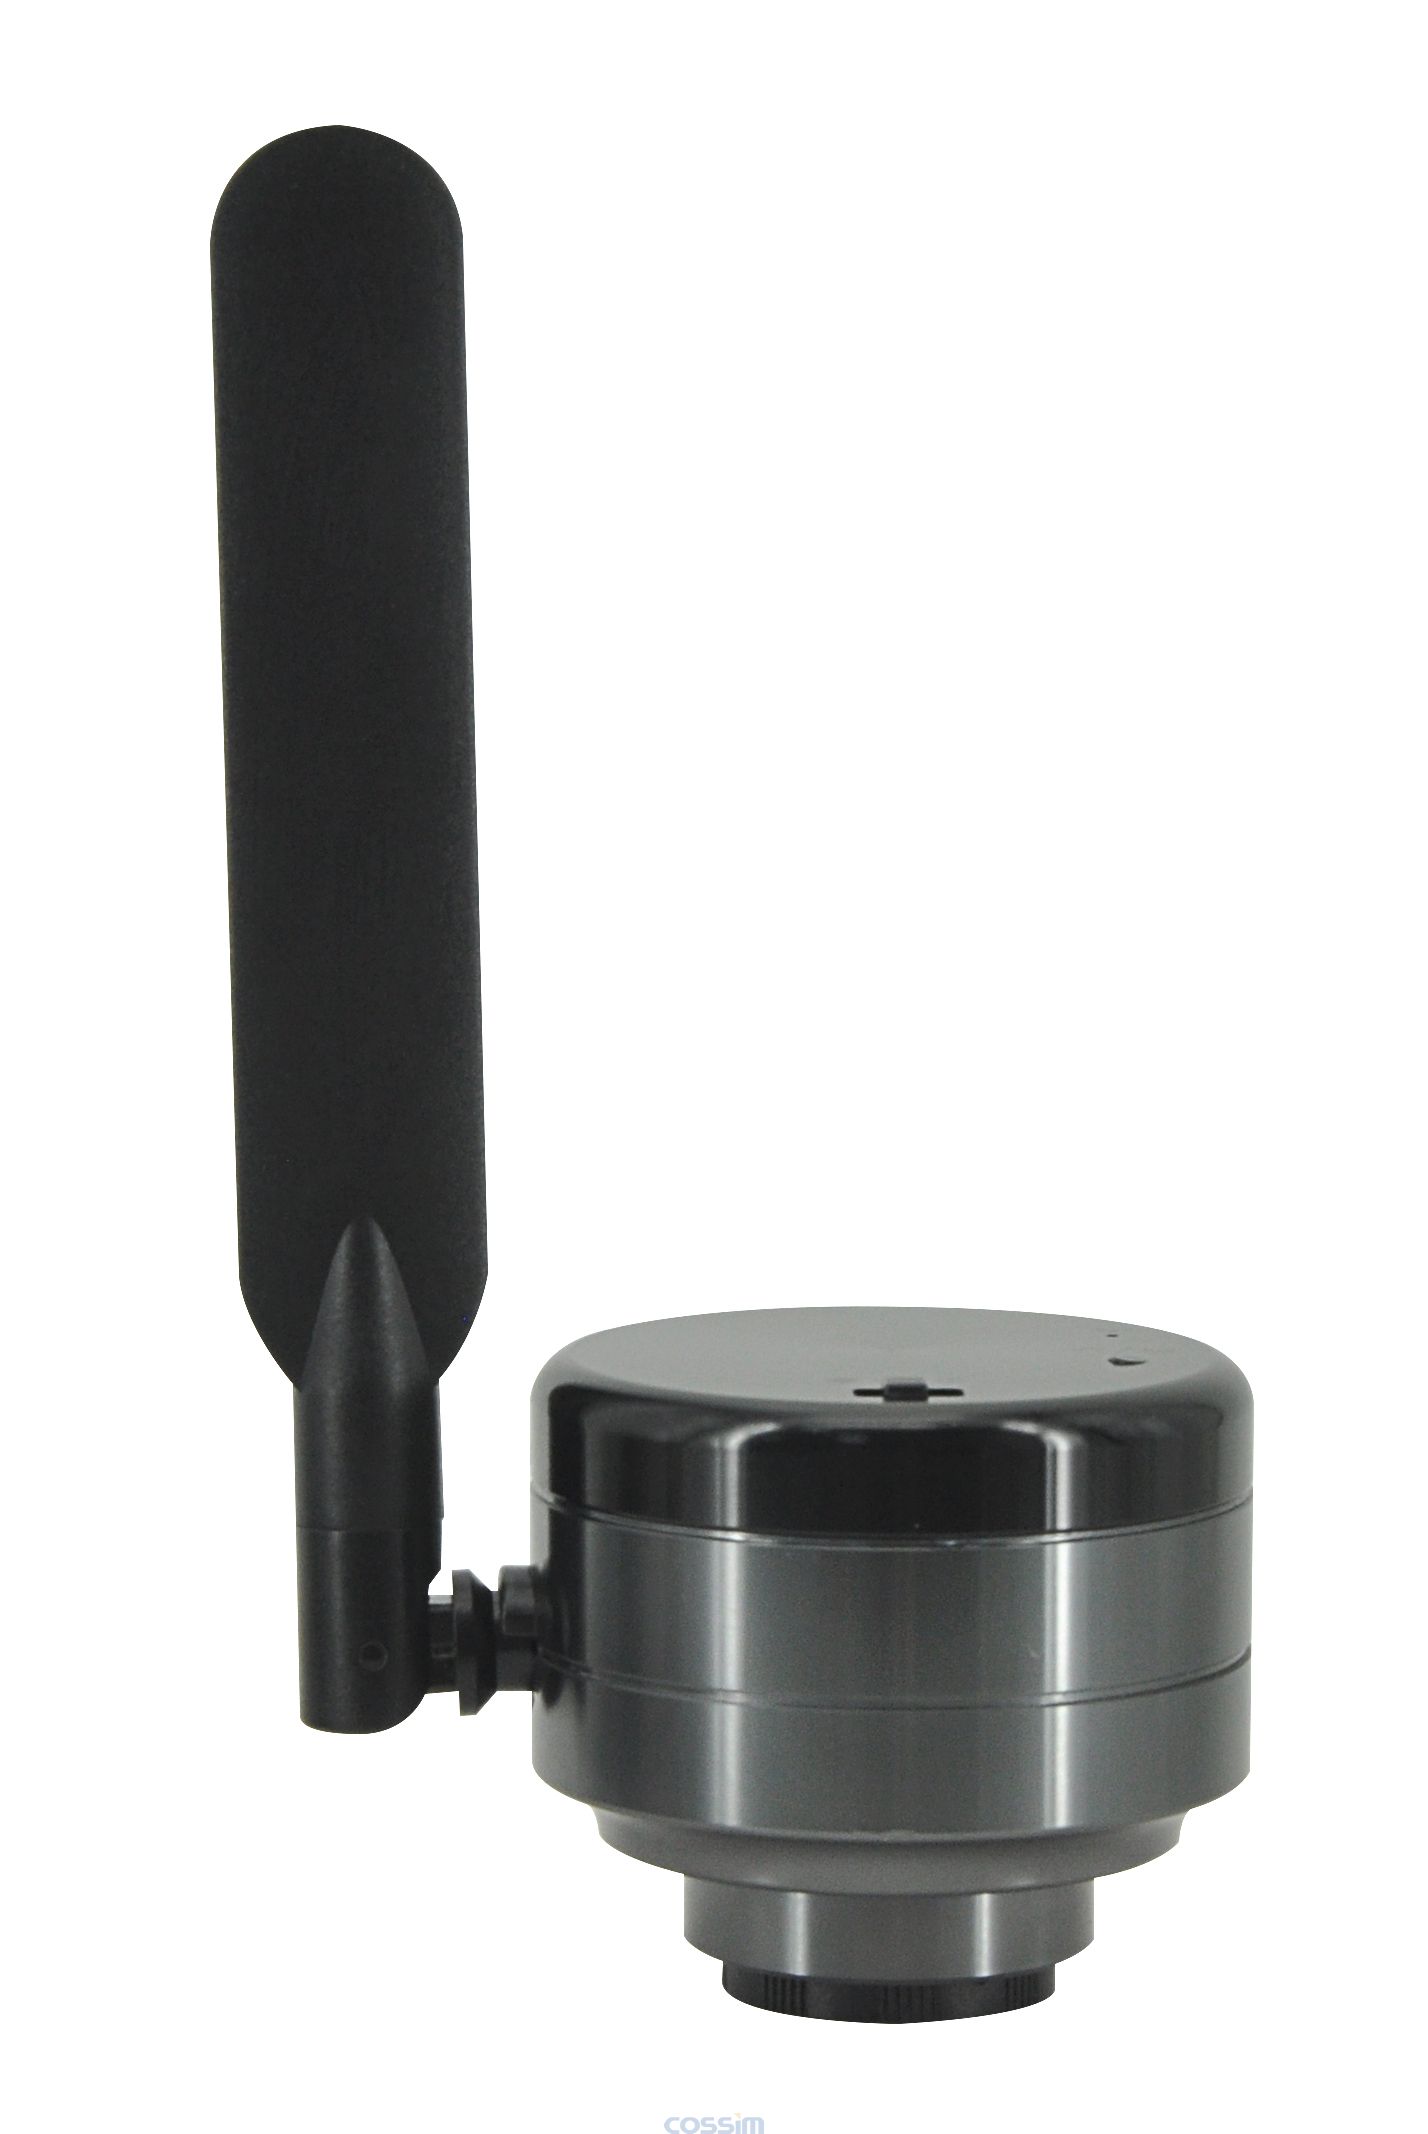 顯微鏡用數碼相機MC4KW-G1 顯微成像系統